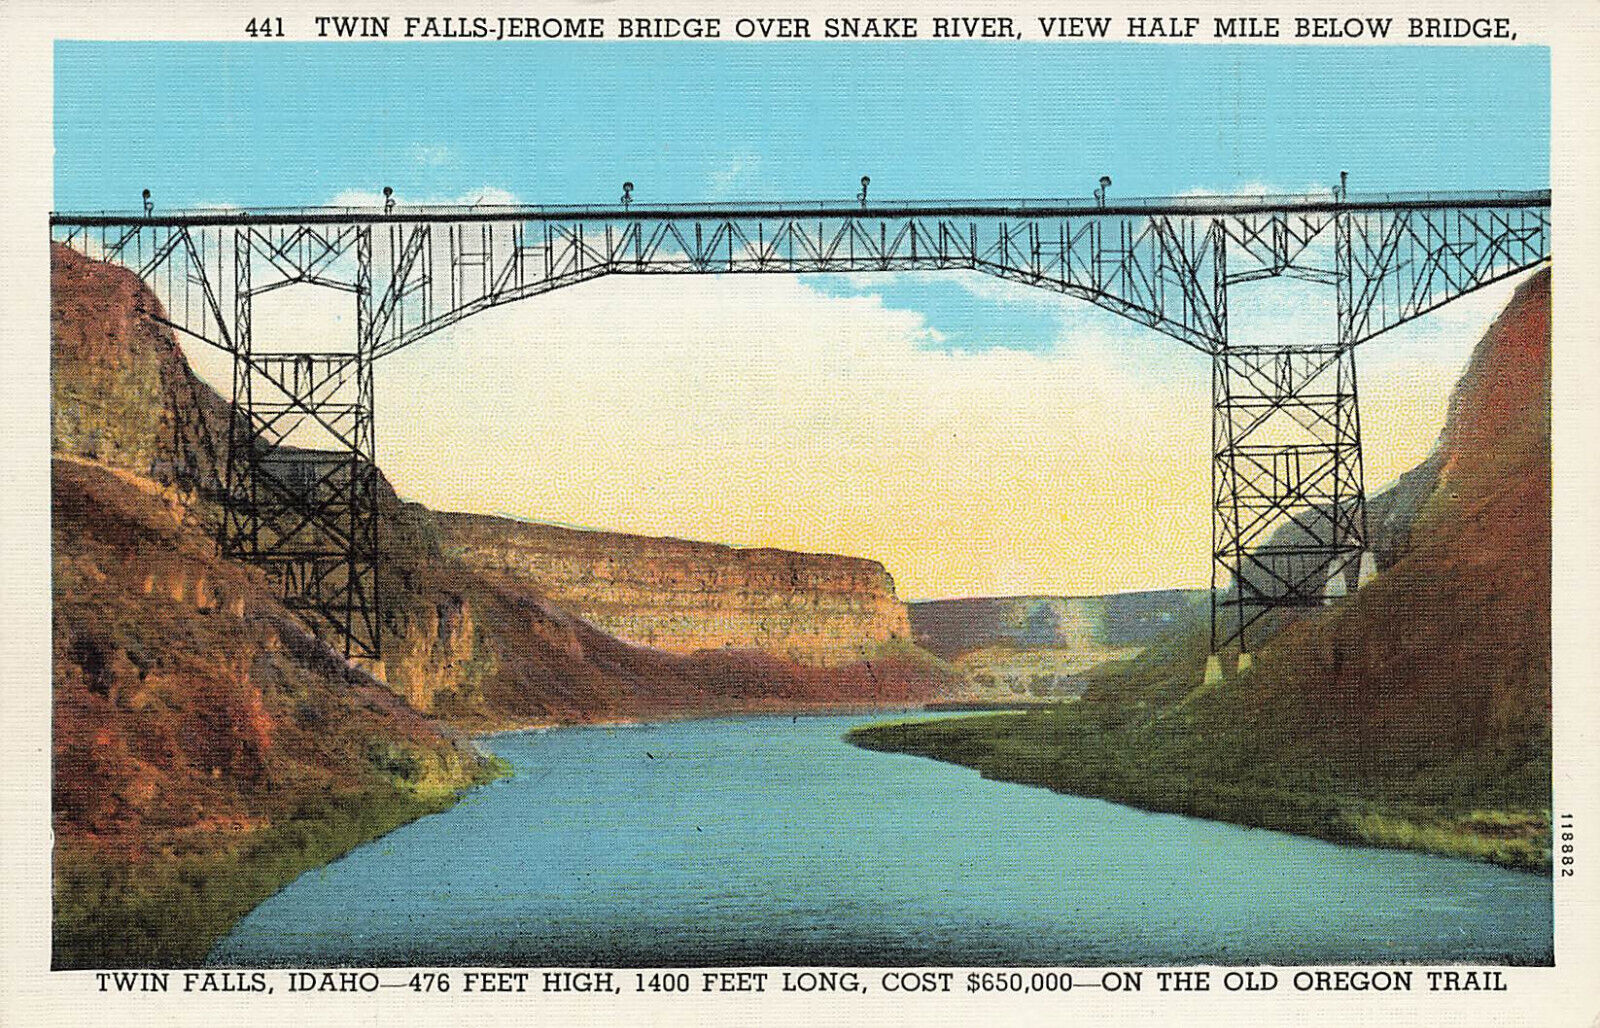 TWIN FALLS JEROME BRIDGE OVER SNAKE RIVER POSTCARD TWIN FALLS ID IDAHO 1930s